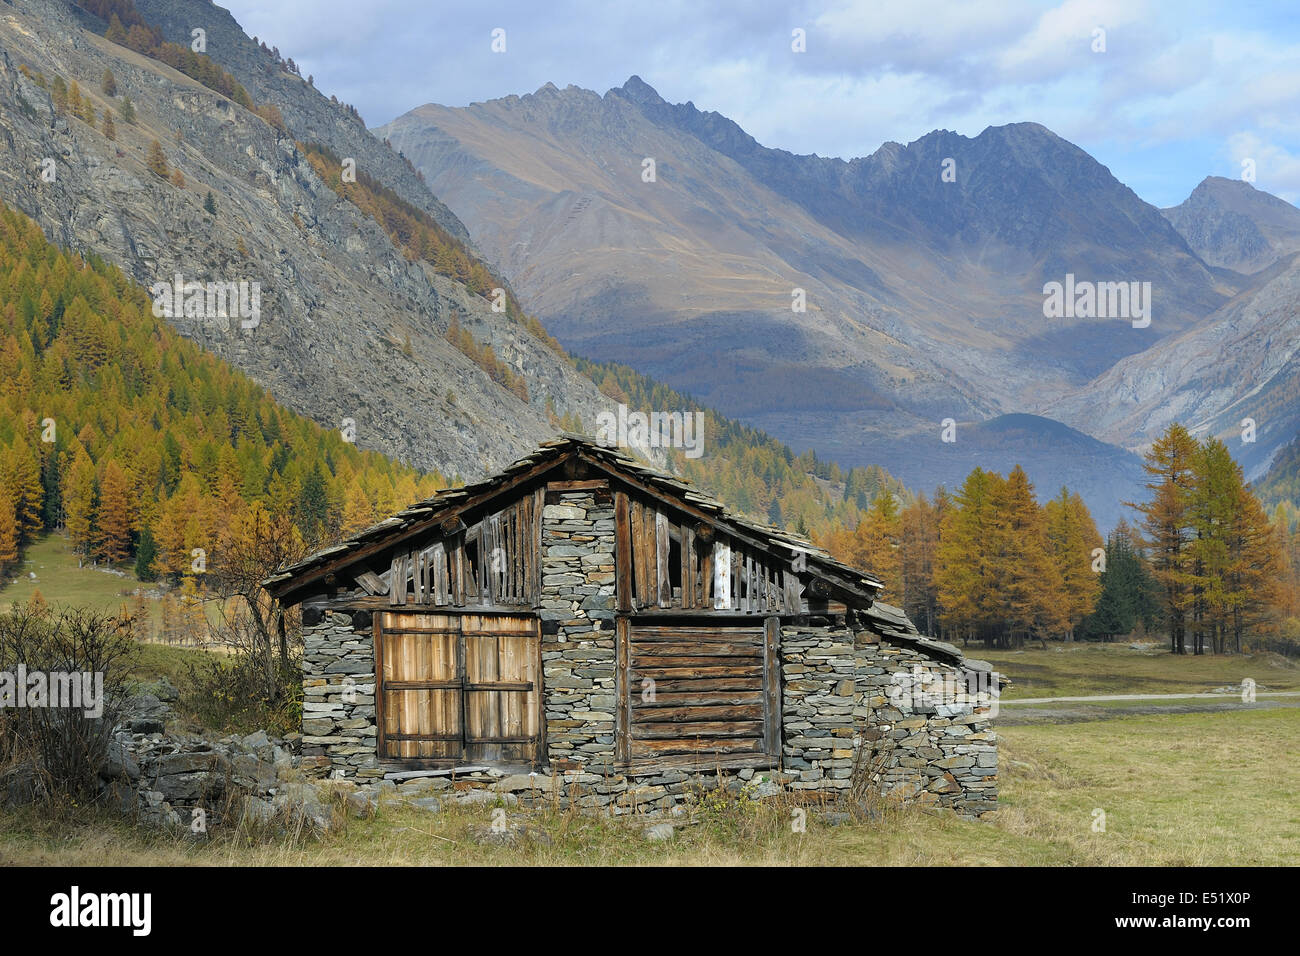 Hut, Gran Paradiso National Park, Italy Stock Photo